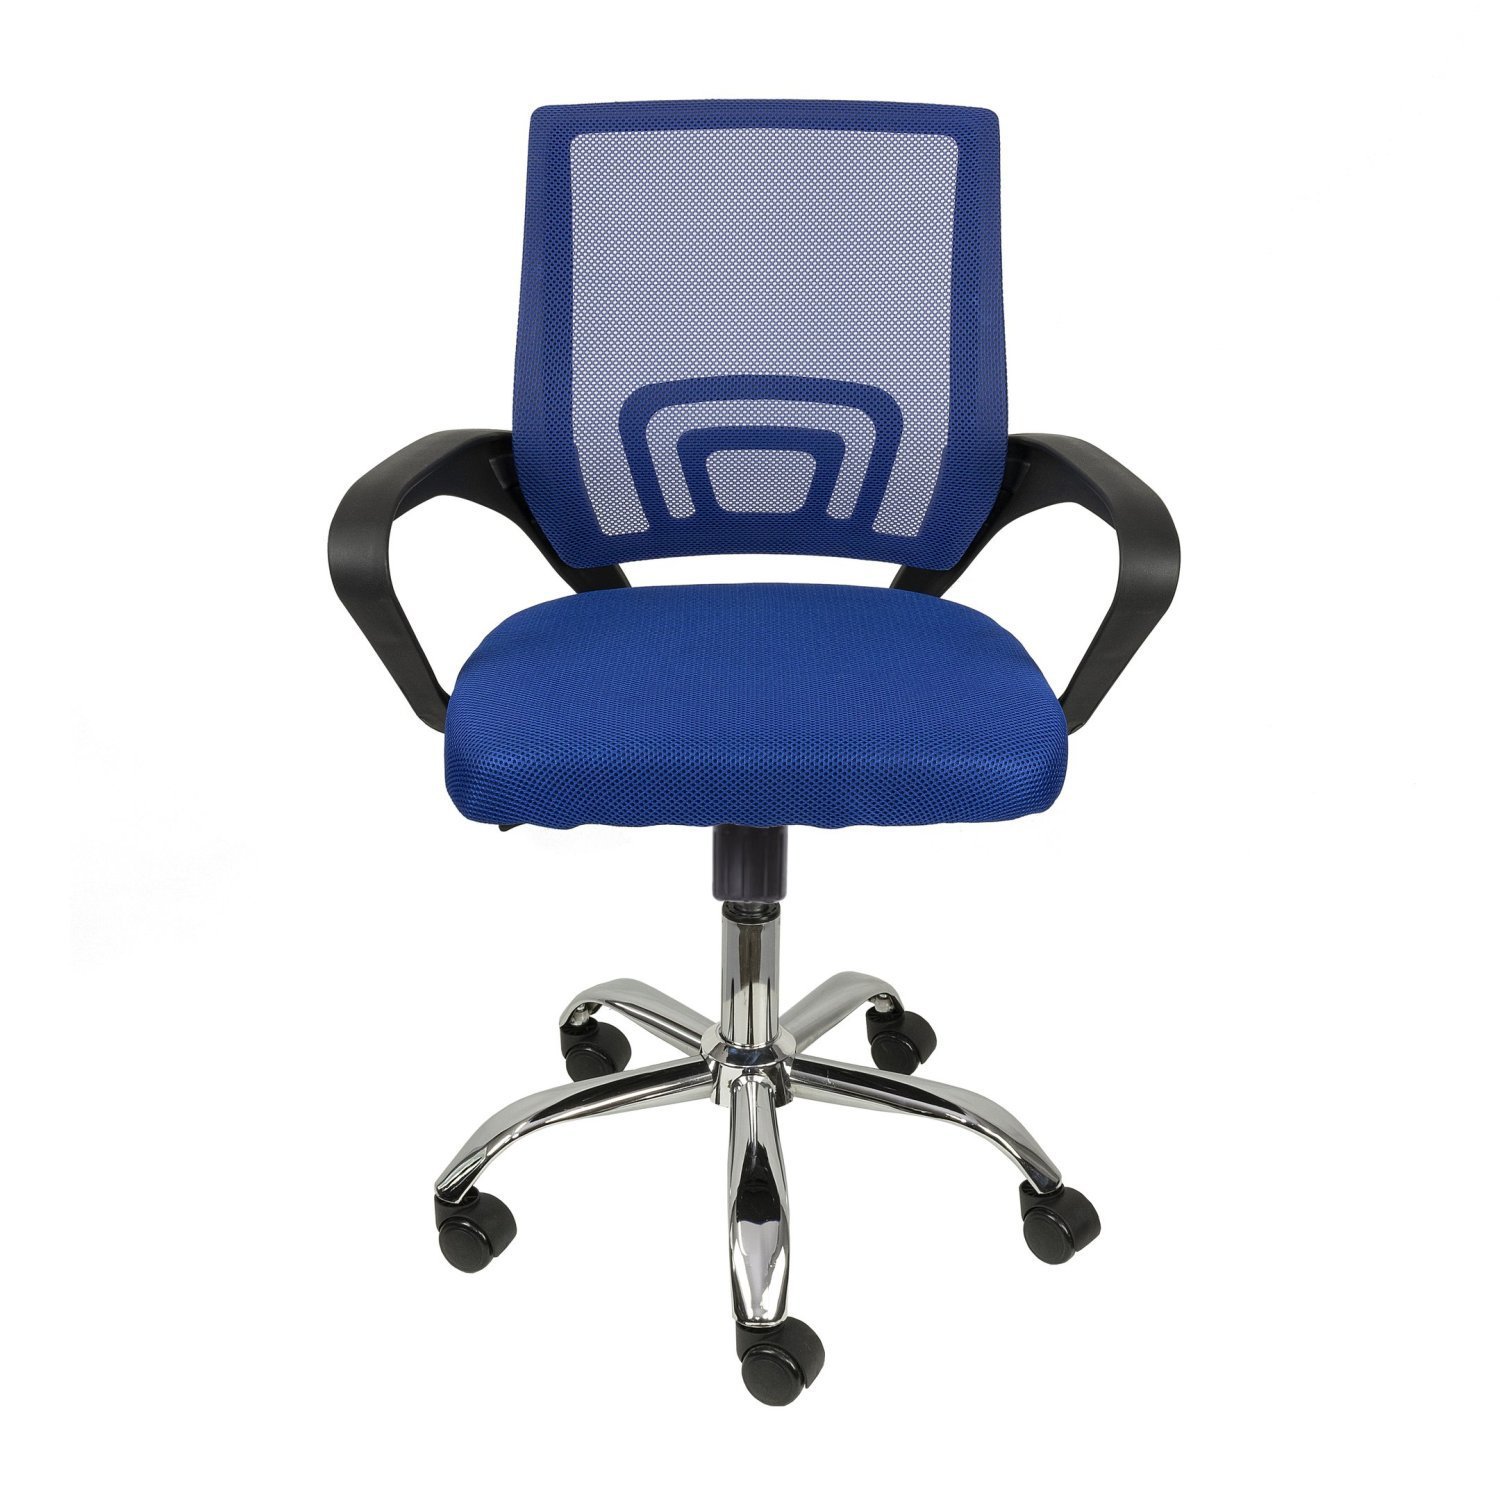 Cadeira para Escritório Diretor Tela Mesh com Relax Tok 3310 Or Design - 2